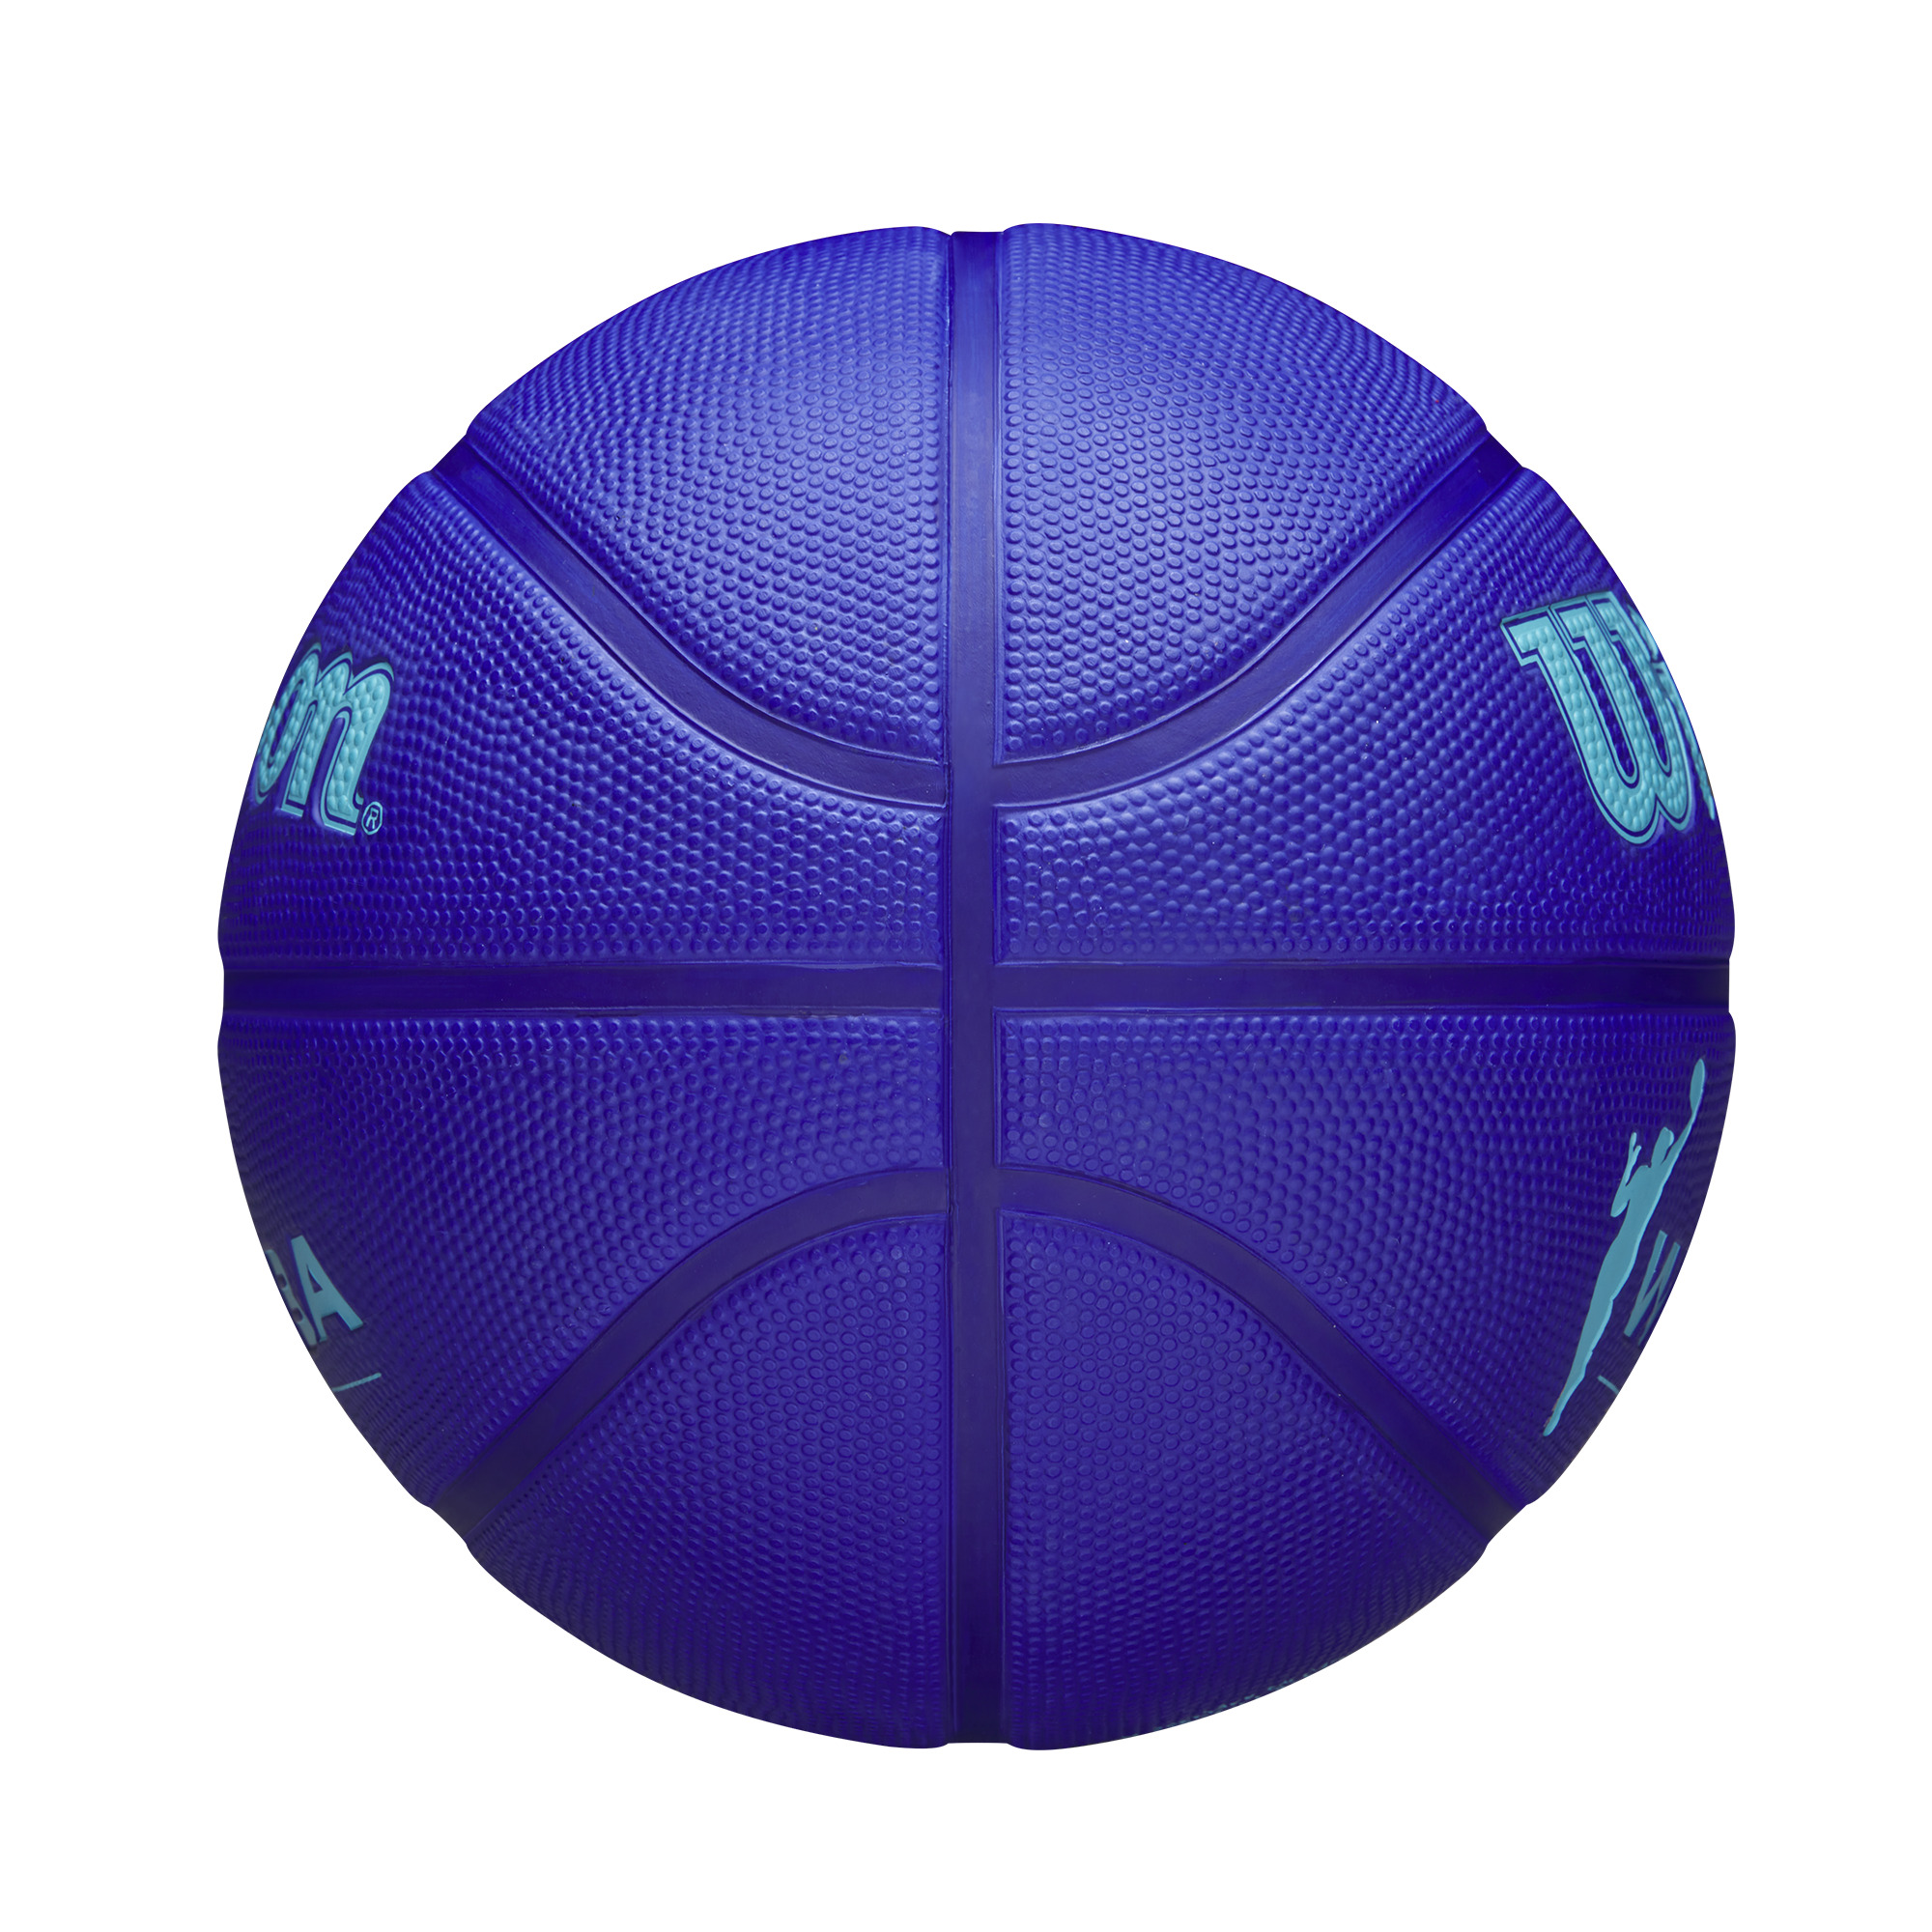 Bola de basquetebol oficial WNBA Tamanho 6 Wilson · Wilson · El Corte Inglés